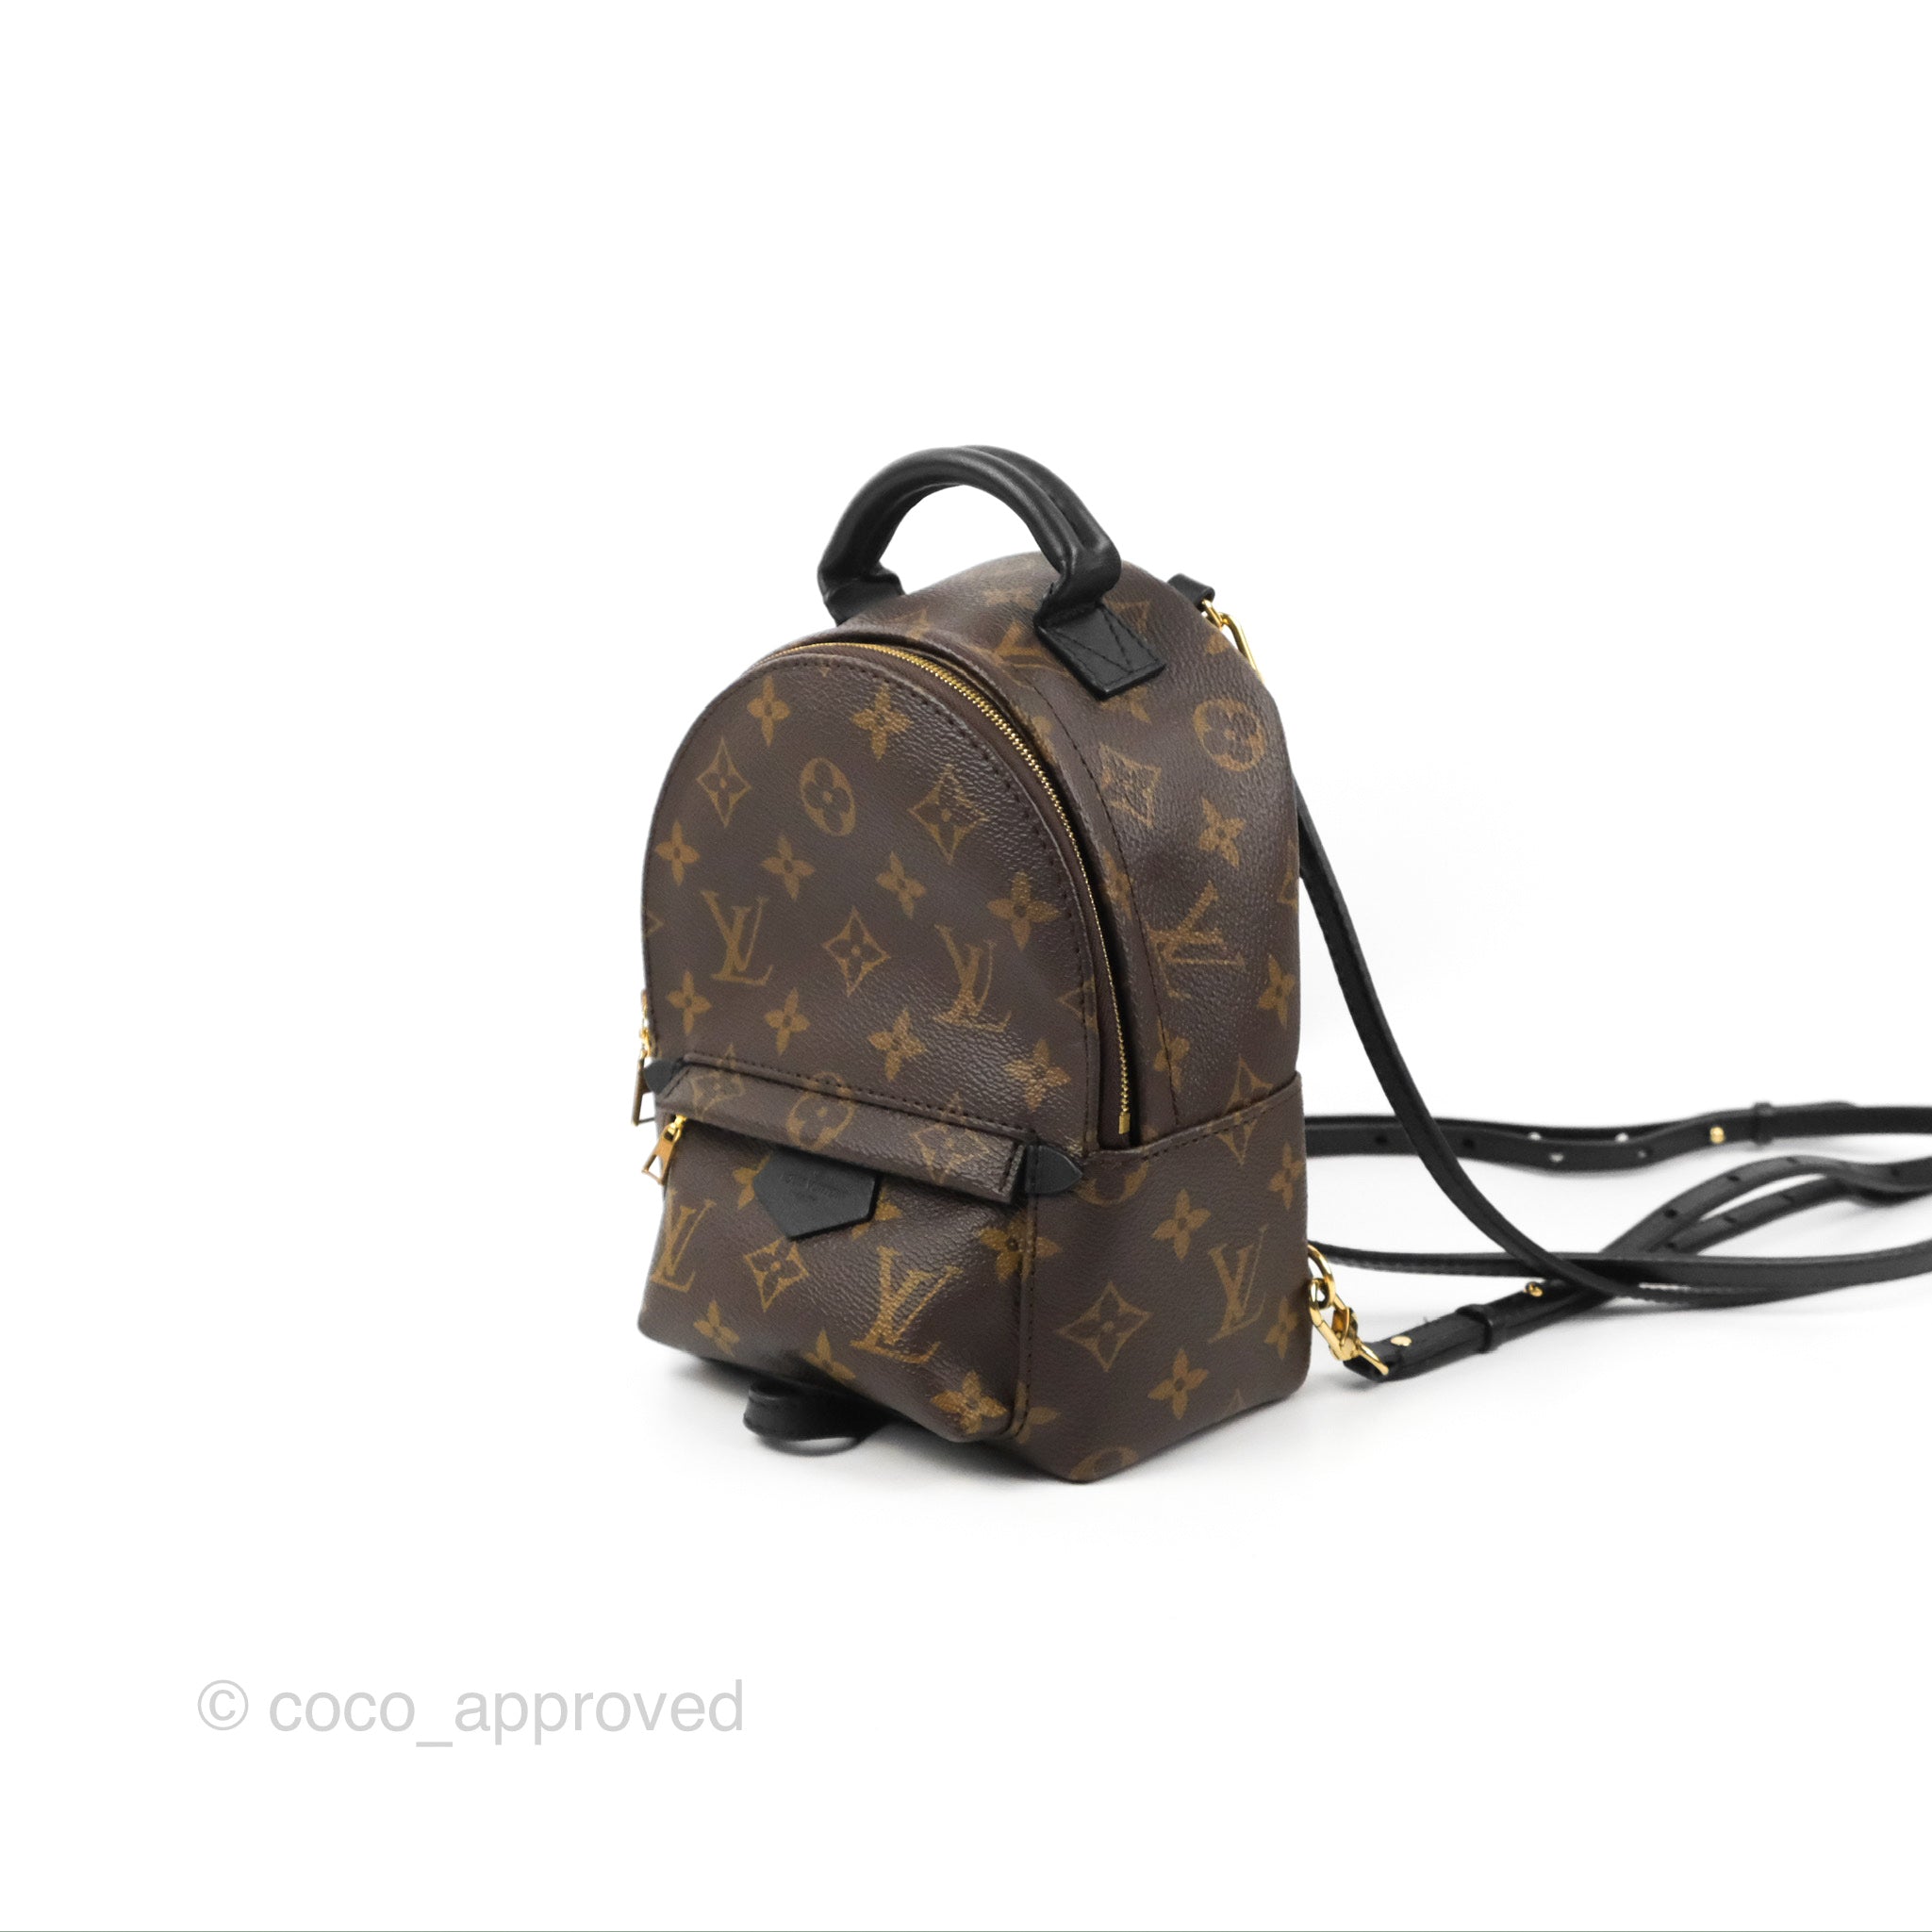 lv mini backpack price